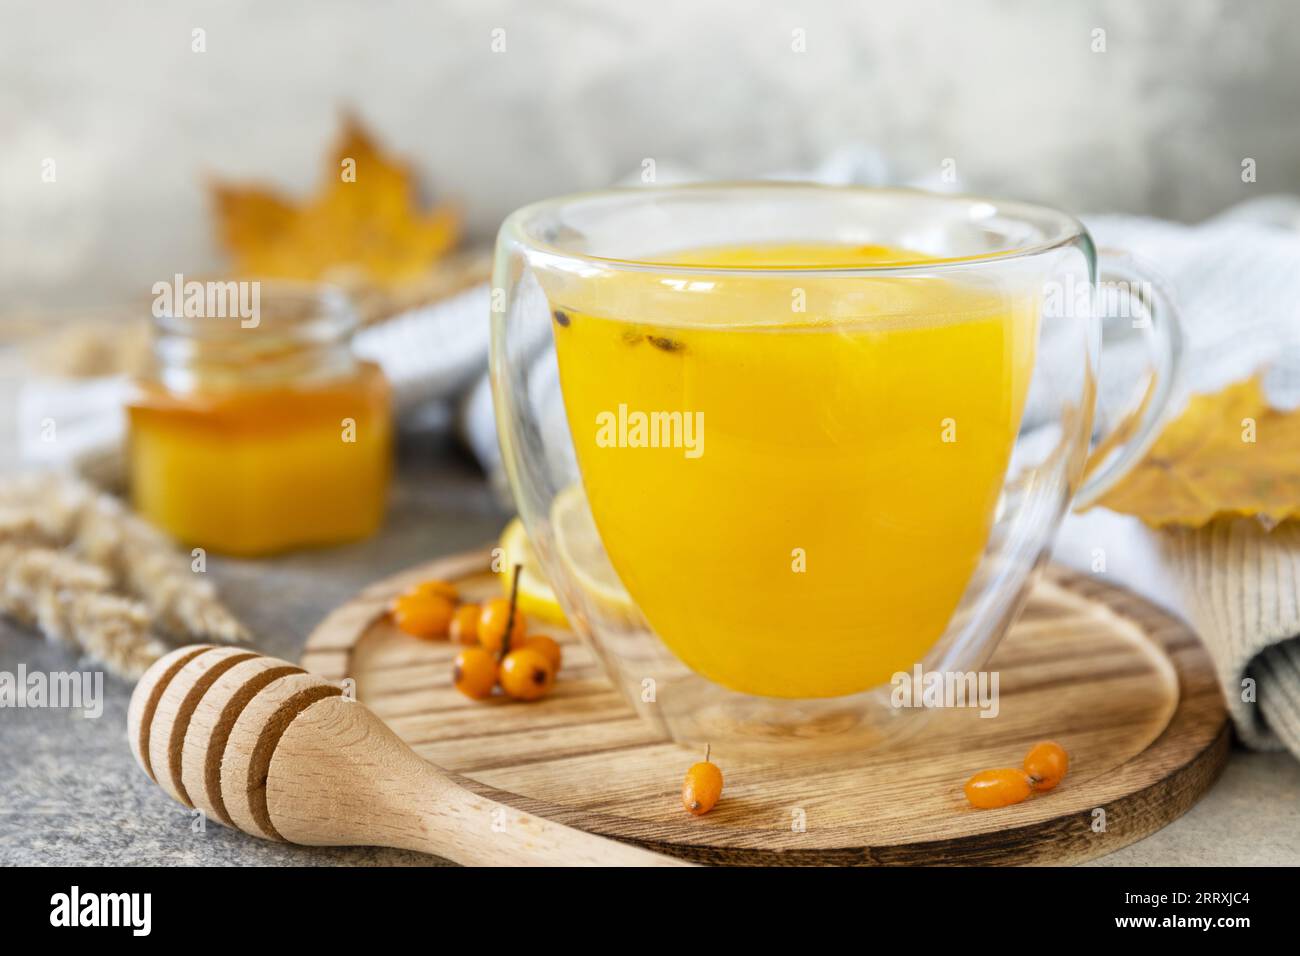 Entspannung und Kräutermedizin. Heißer Kräuter-Vitamin-Sanddorn-Tee in einer Glasschale mit frischen Sanddornbeeren, Honig und Zitrone auf einem Steintisch Stockfoto